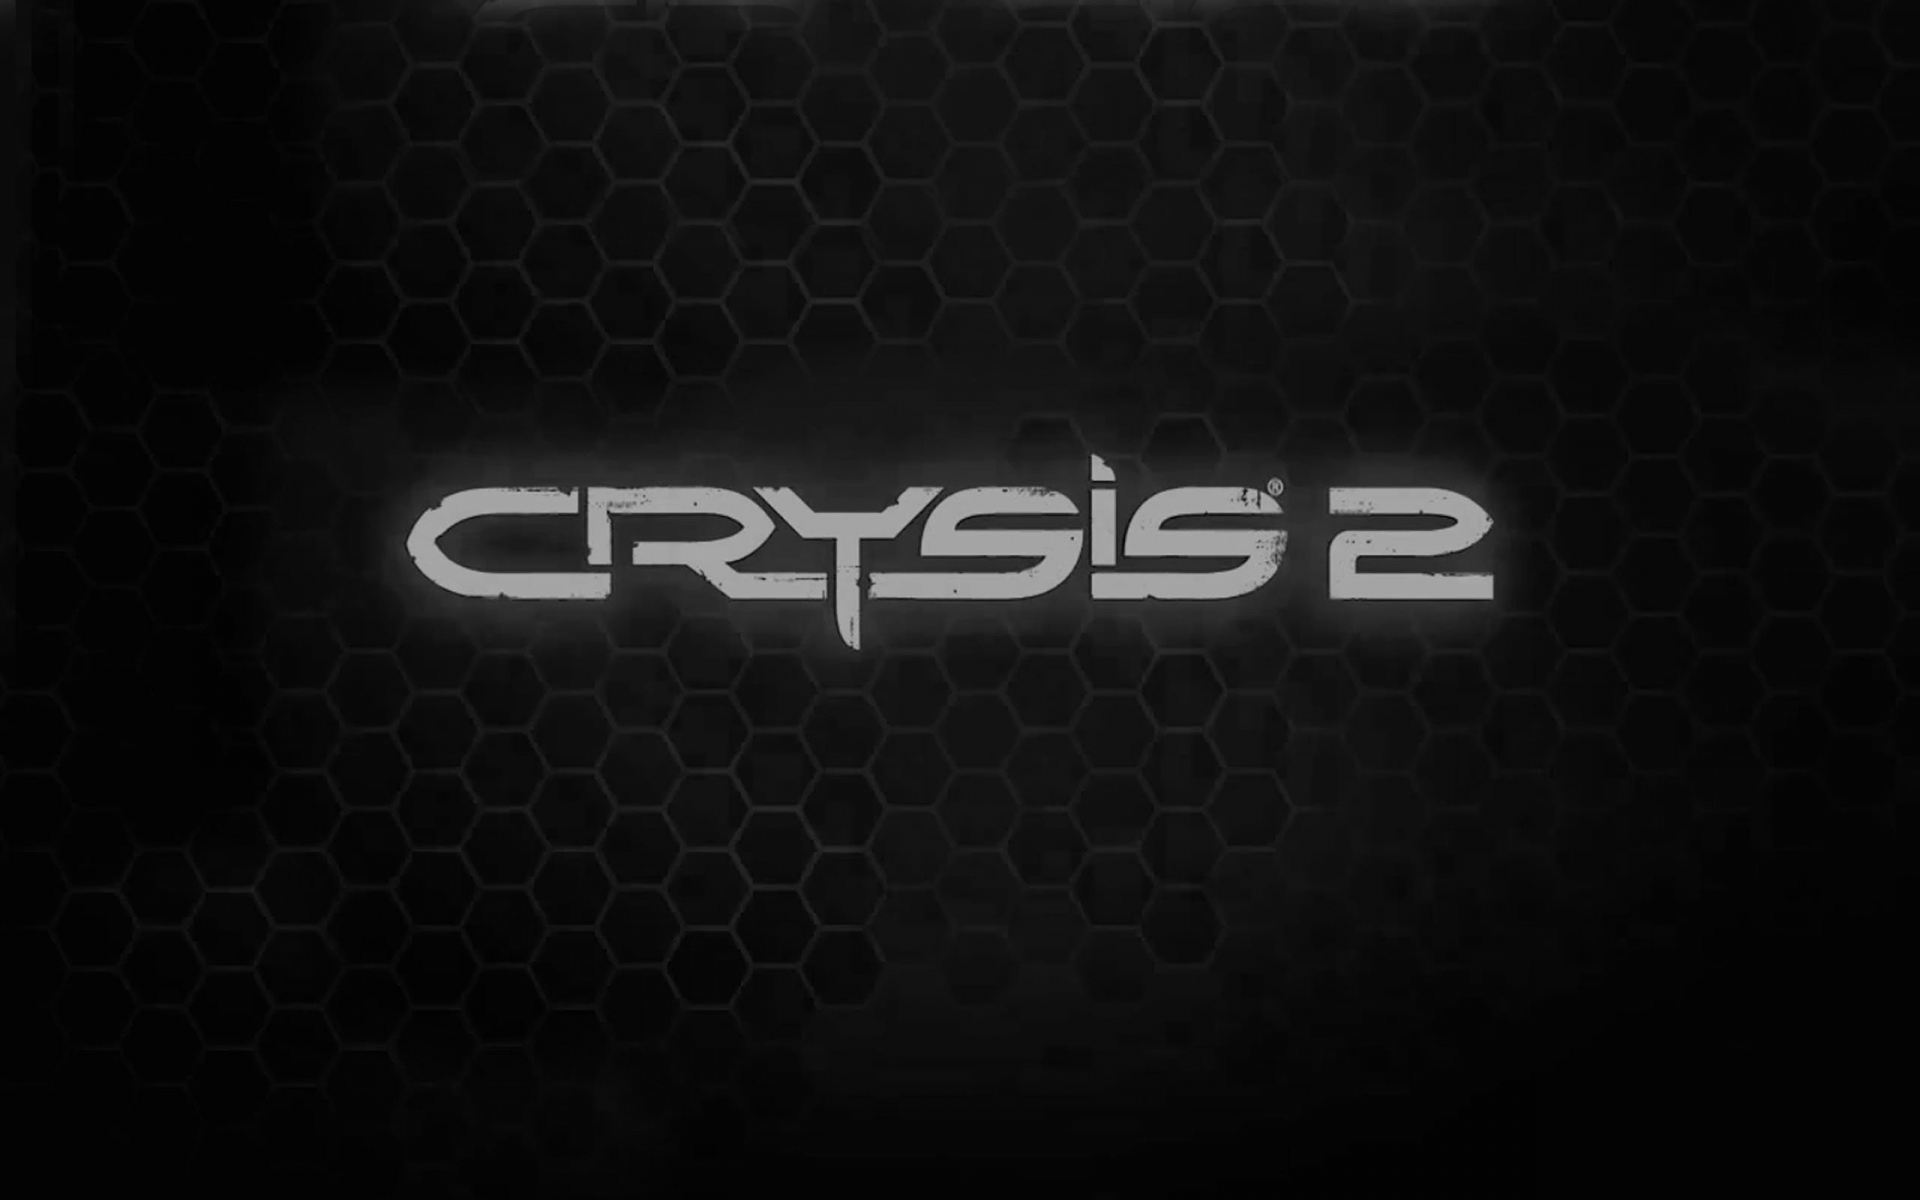 Картинки Crysis 2, имя, игра, шрифт, фон фото и обои на рабочий стол